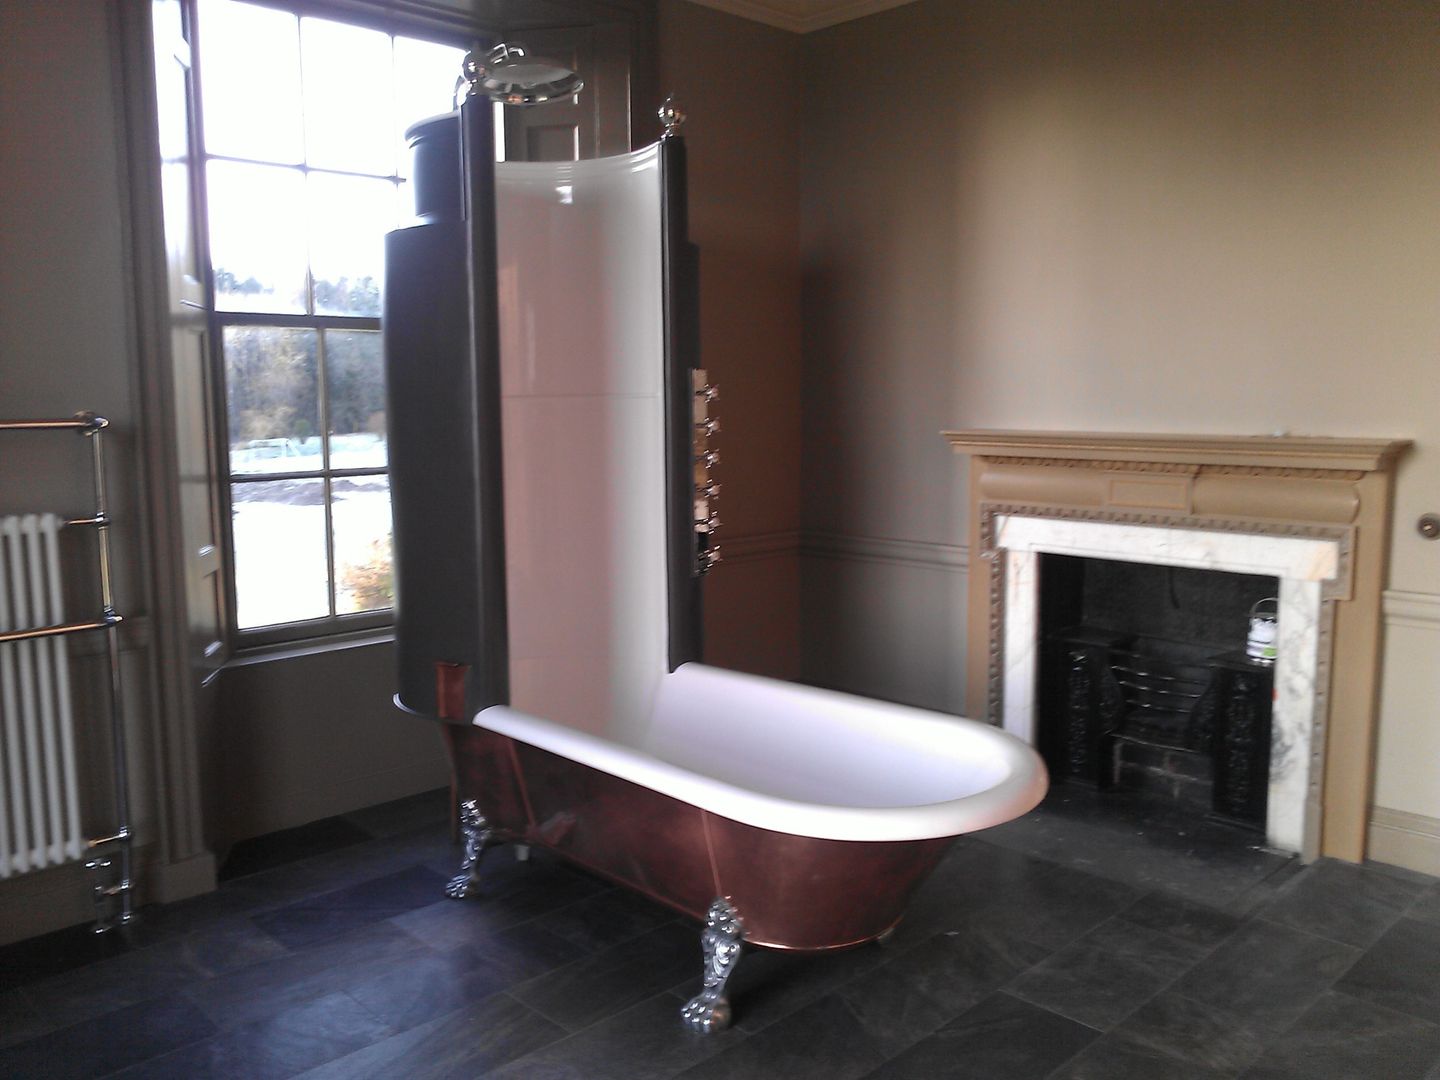 Period Bath / Shower Architects Scotland Ltd Ванная в классическом стиле Ванны и душевые